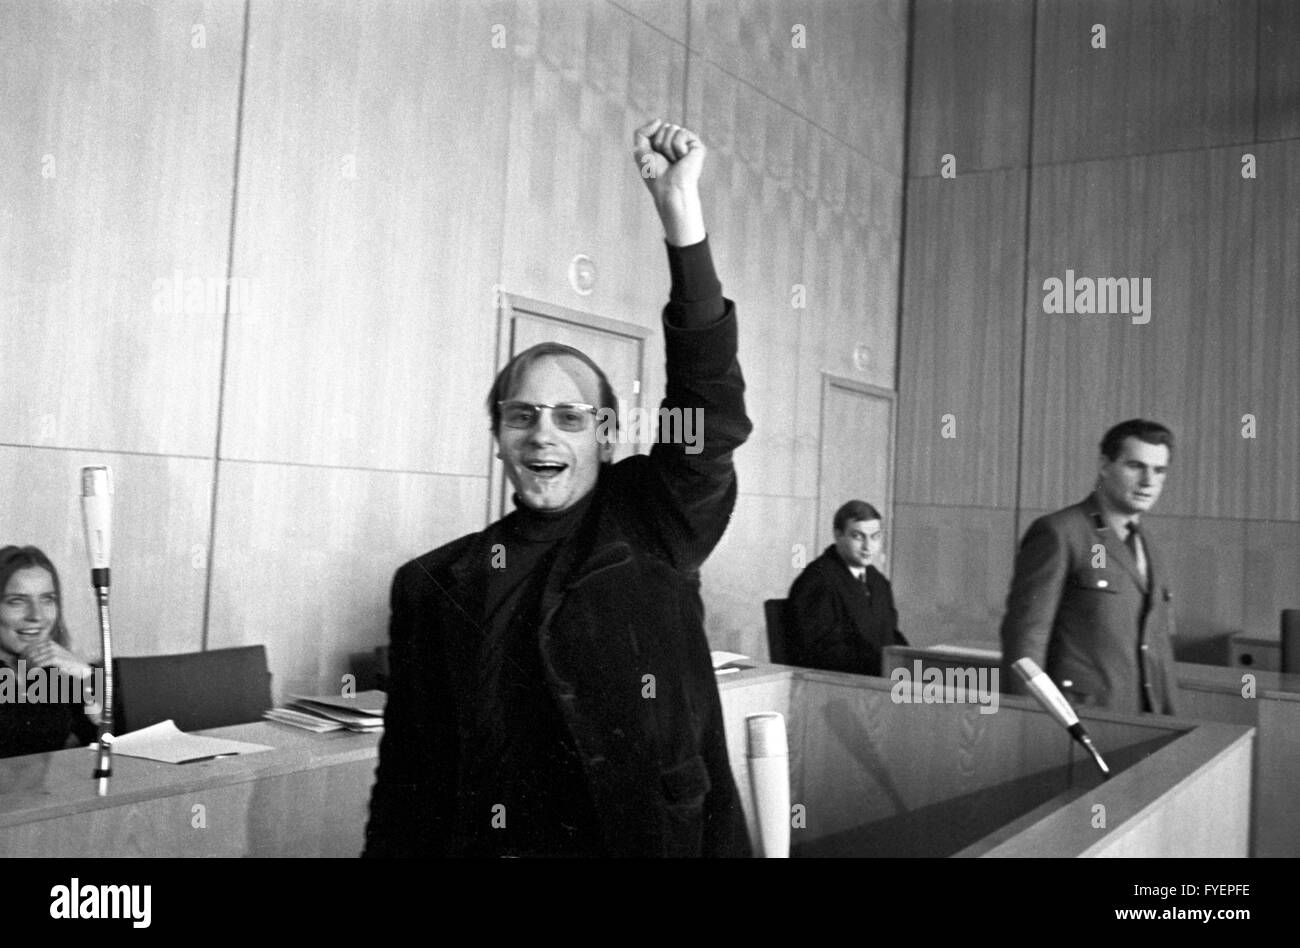 Accusato leader degli studenti Hans-Jürgen Krahl davanti a una corte di assessori laici a Frankfurt am Main il 05 febbraio 1969. Egli è accusato di pesanti sconfinamenti in coincidenza con la coercizione. Egli era stato arrestato il 31 gennaio 1969. Foto Stock